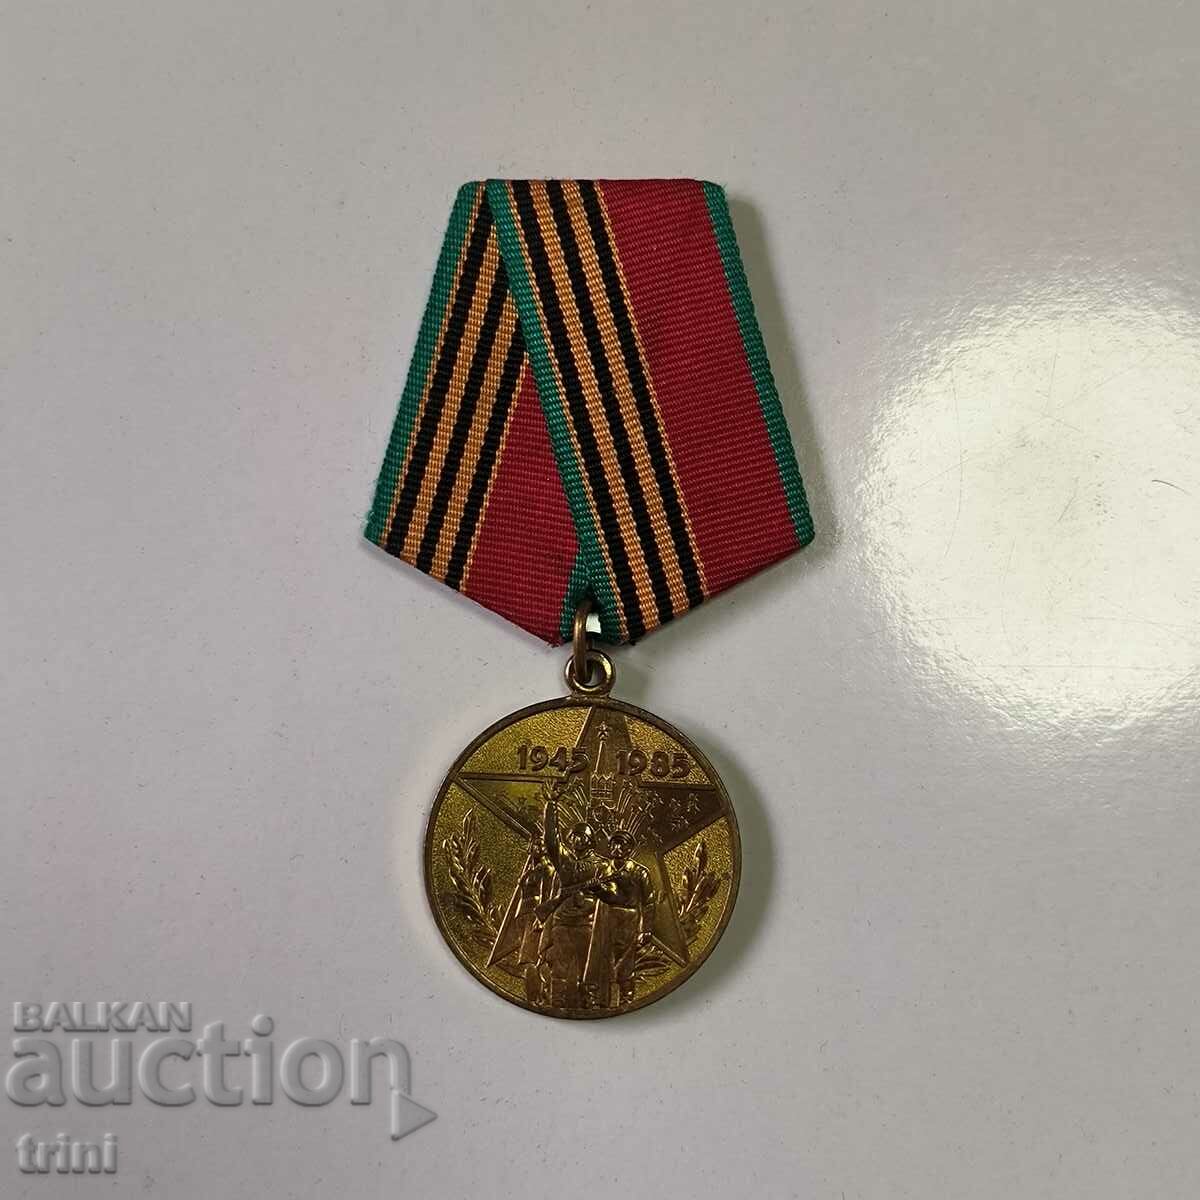 Μετάλλιο 40 χρόνια του Β' Παγκοσμίου Πολέμου - Για έναν συμμετέχοντα στο εργατικό μέτωπο της ΕΣΣΔ